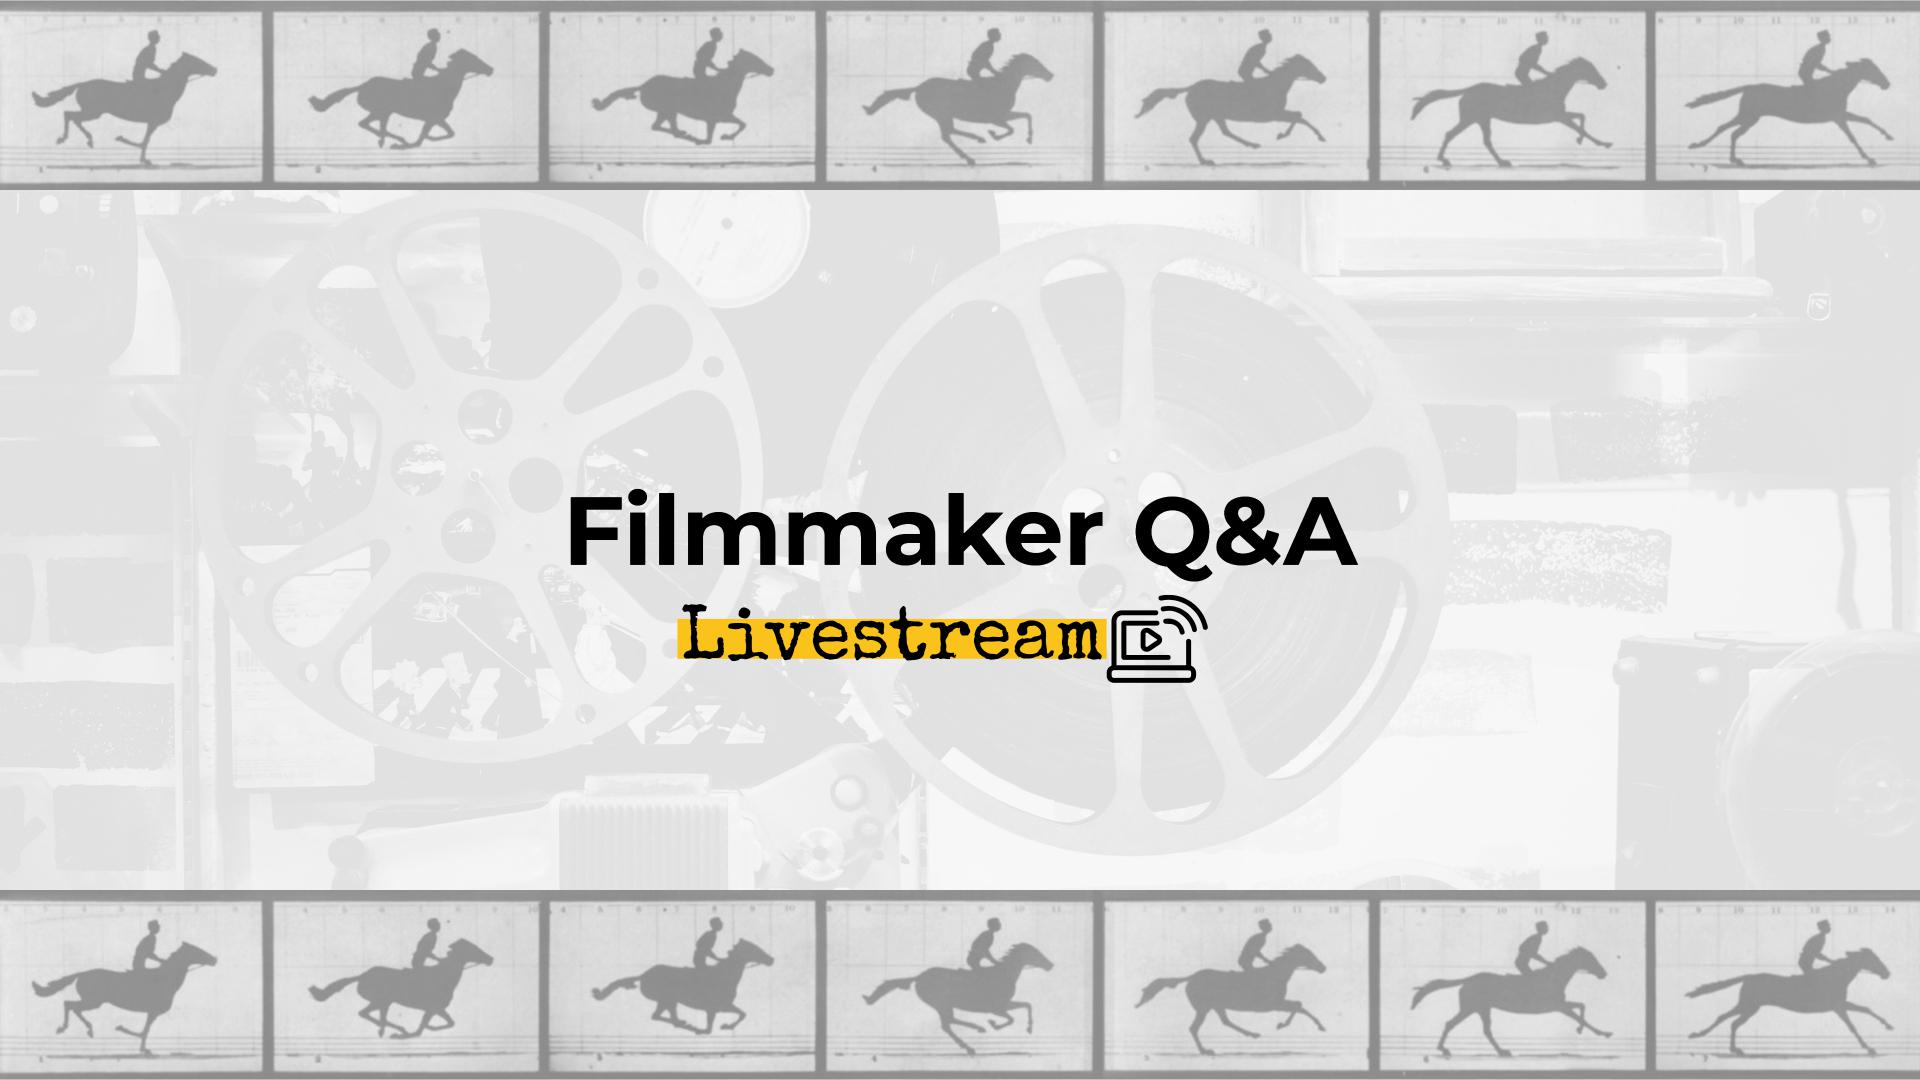 Filmmaker Q&A 2